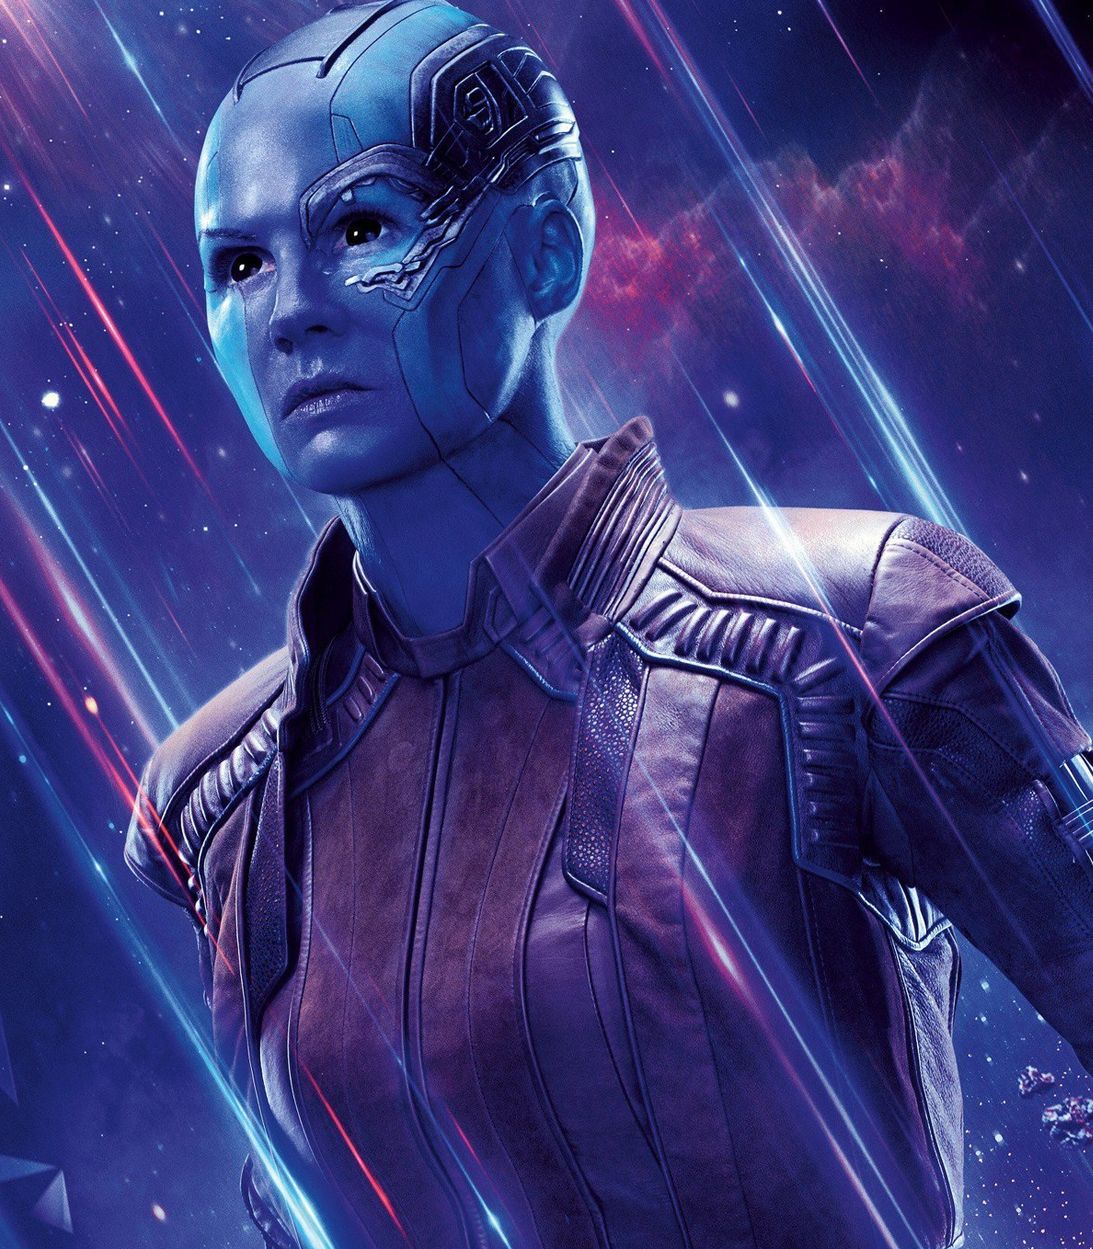 Karen Gillan as Nebula in Avengers Endgame